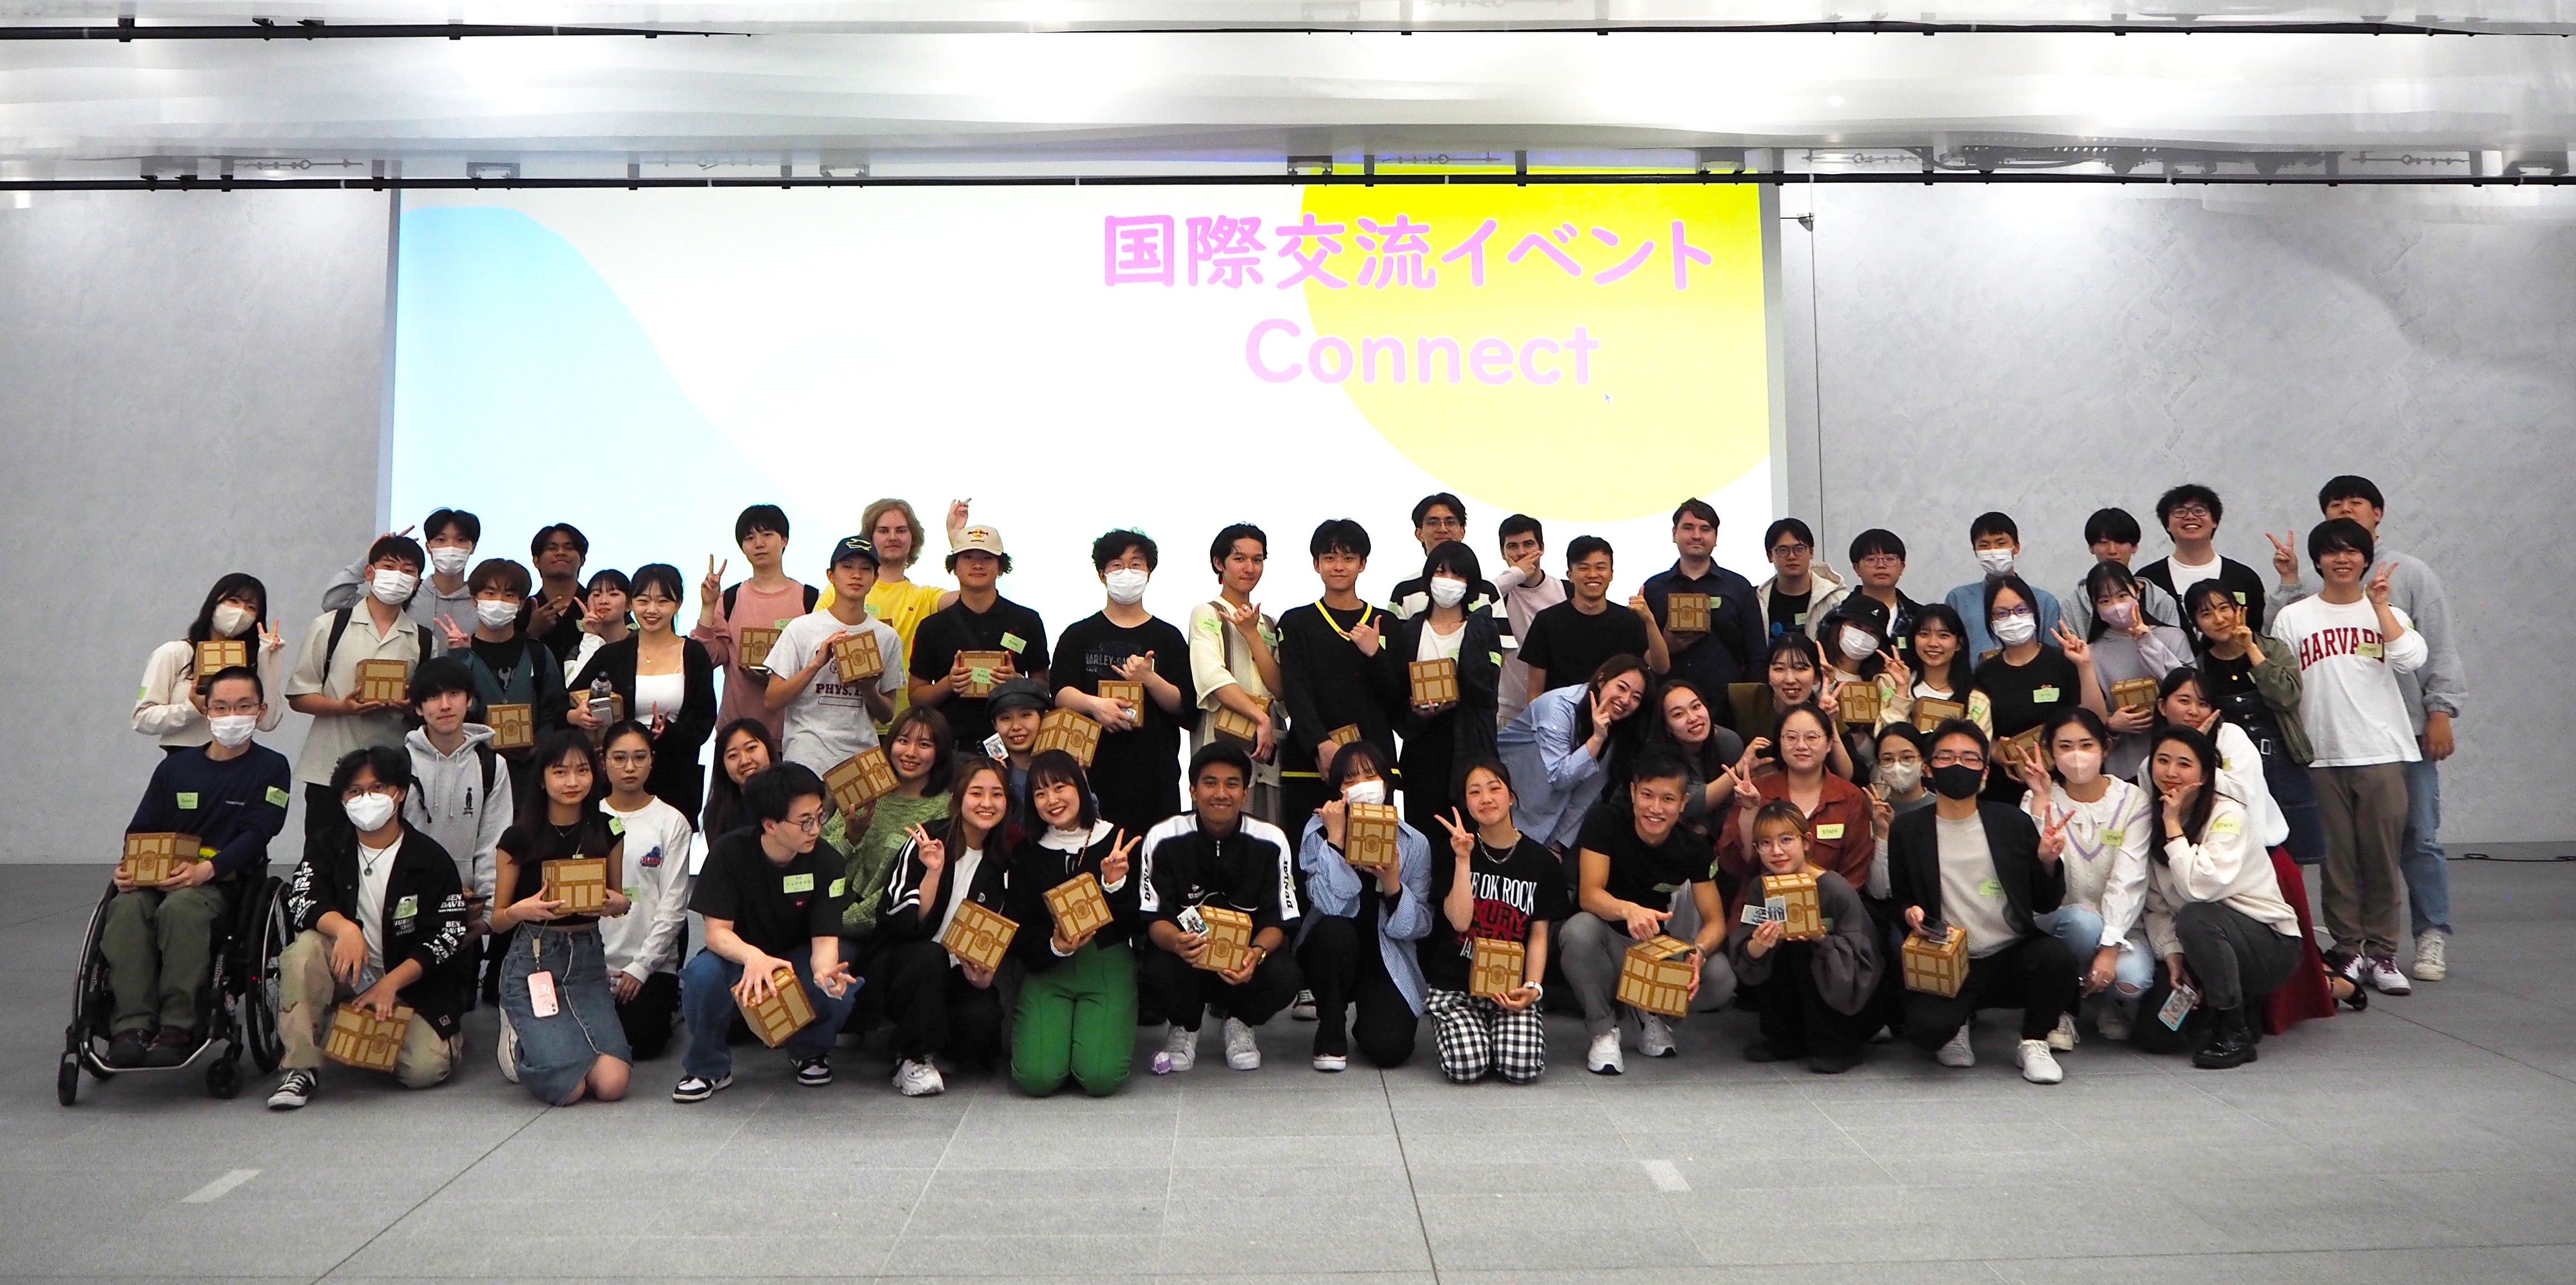 学生主体の国際交流チーム「Connect」が日本人学生と留学生による国際交流イベントを開催